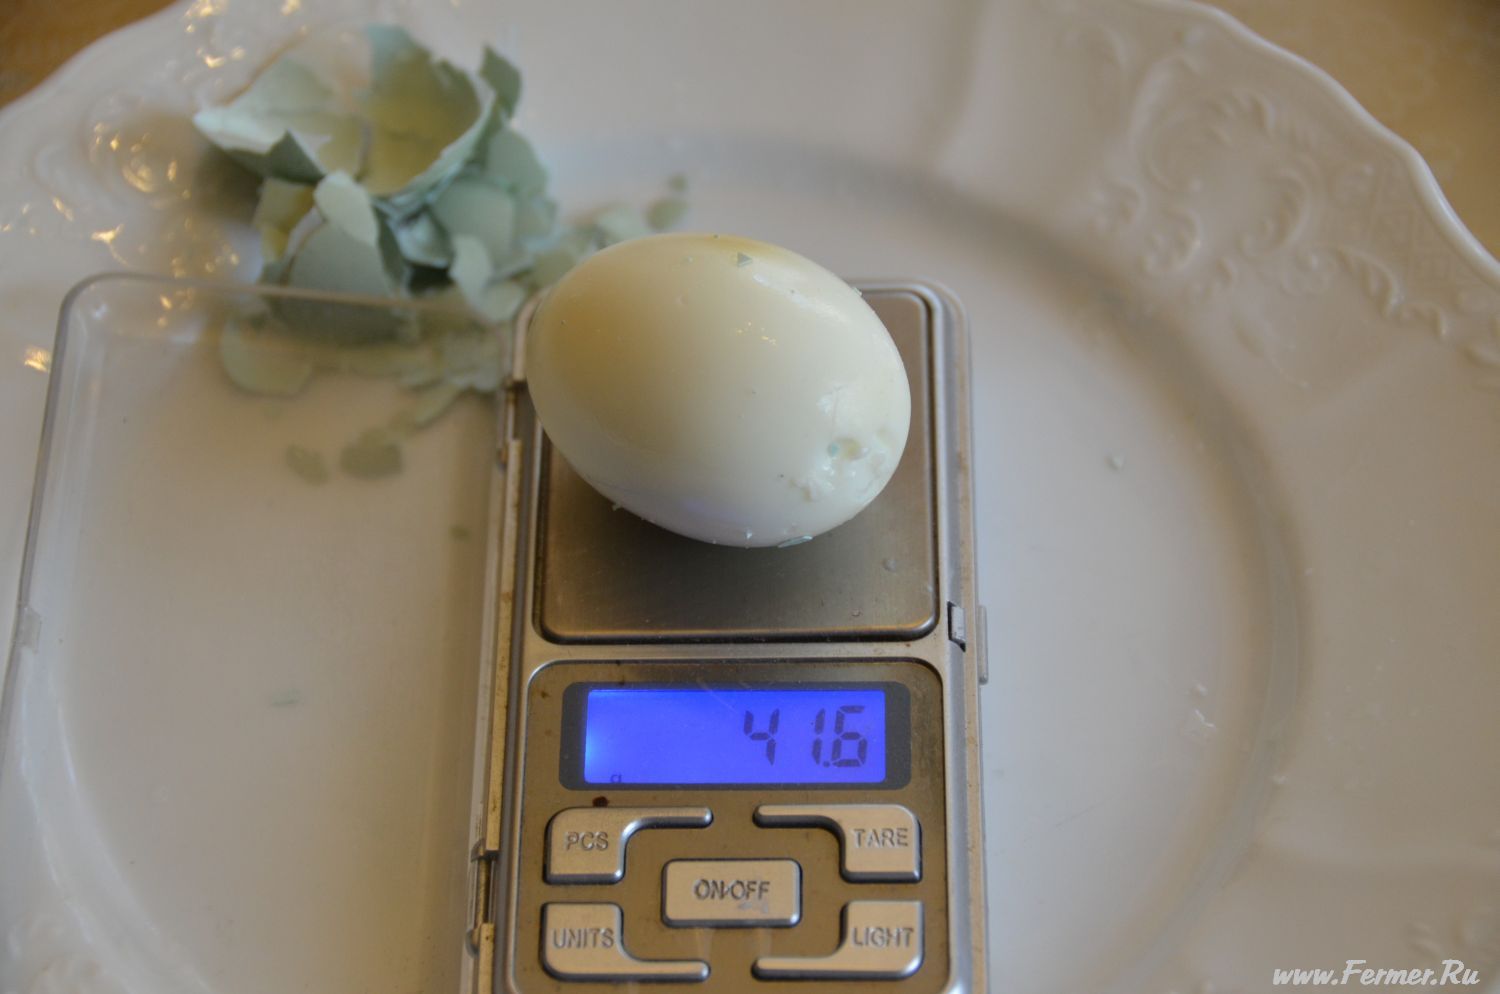 Сколько весит яйцо куриное без скорлупы вареное. Вес 1 куриного яйца вареного. Яйцо куриное вес 1 шт без скорлупы. Вес 1 вареного яйца. Яйцо вареное вес 1 шт без скорлупы.